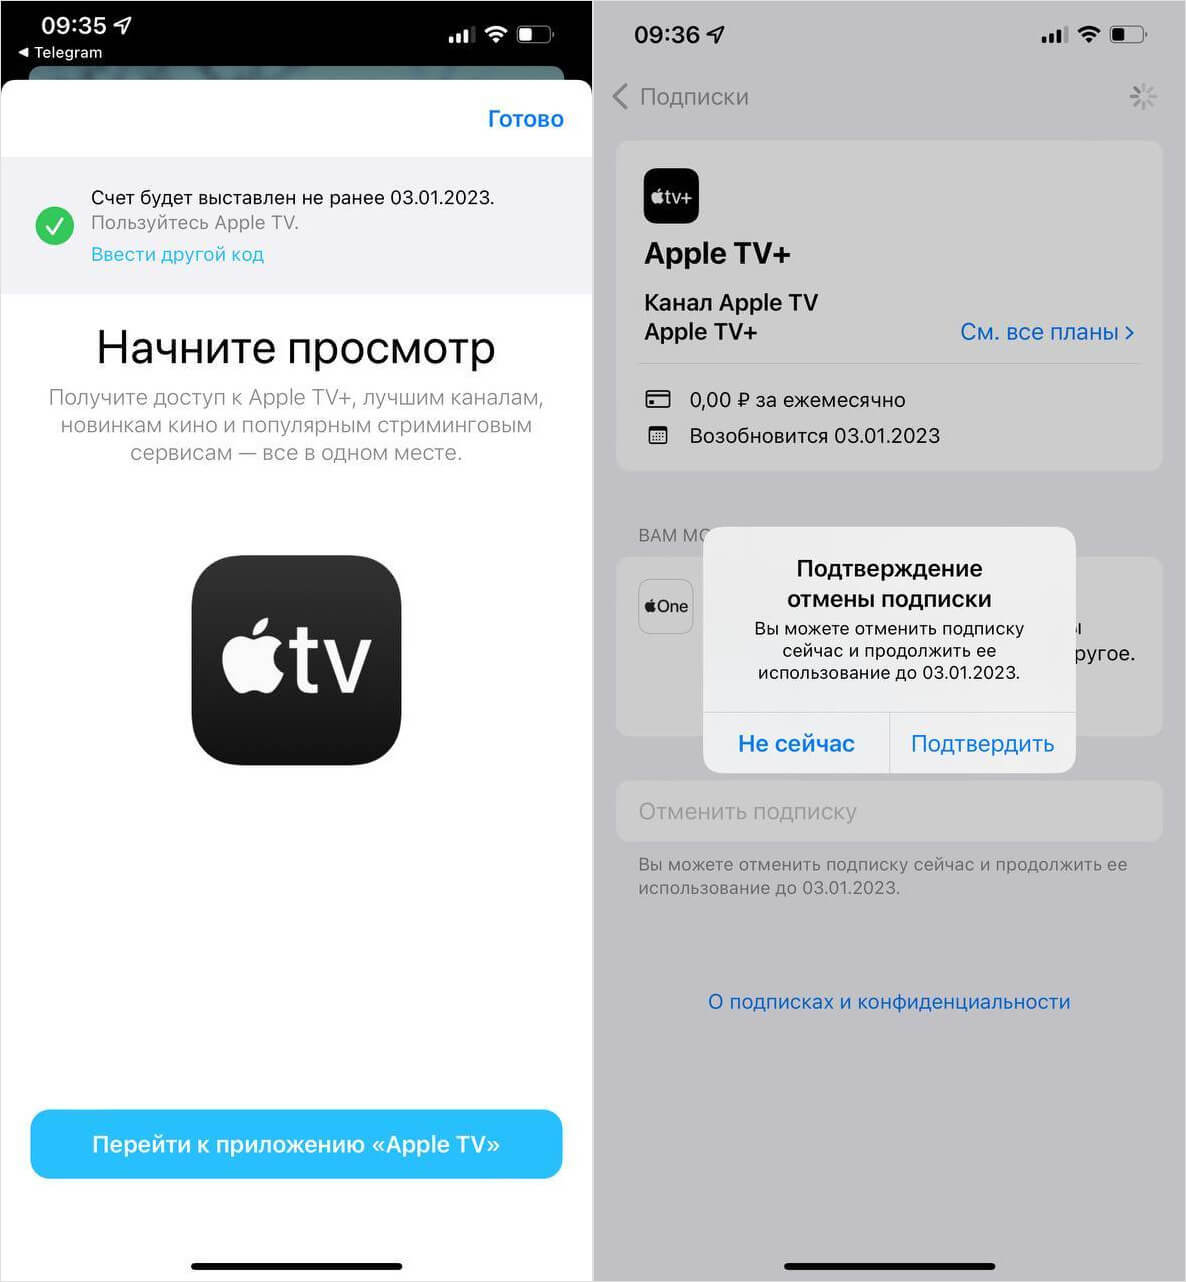 Как подключить Apple TV+ бесплатно. Подписка на Apple TV+ доступна любому, даже если вы уже пользовались сервисом. Фото